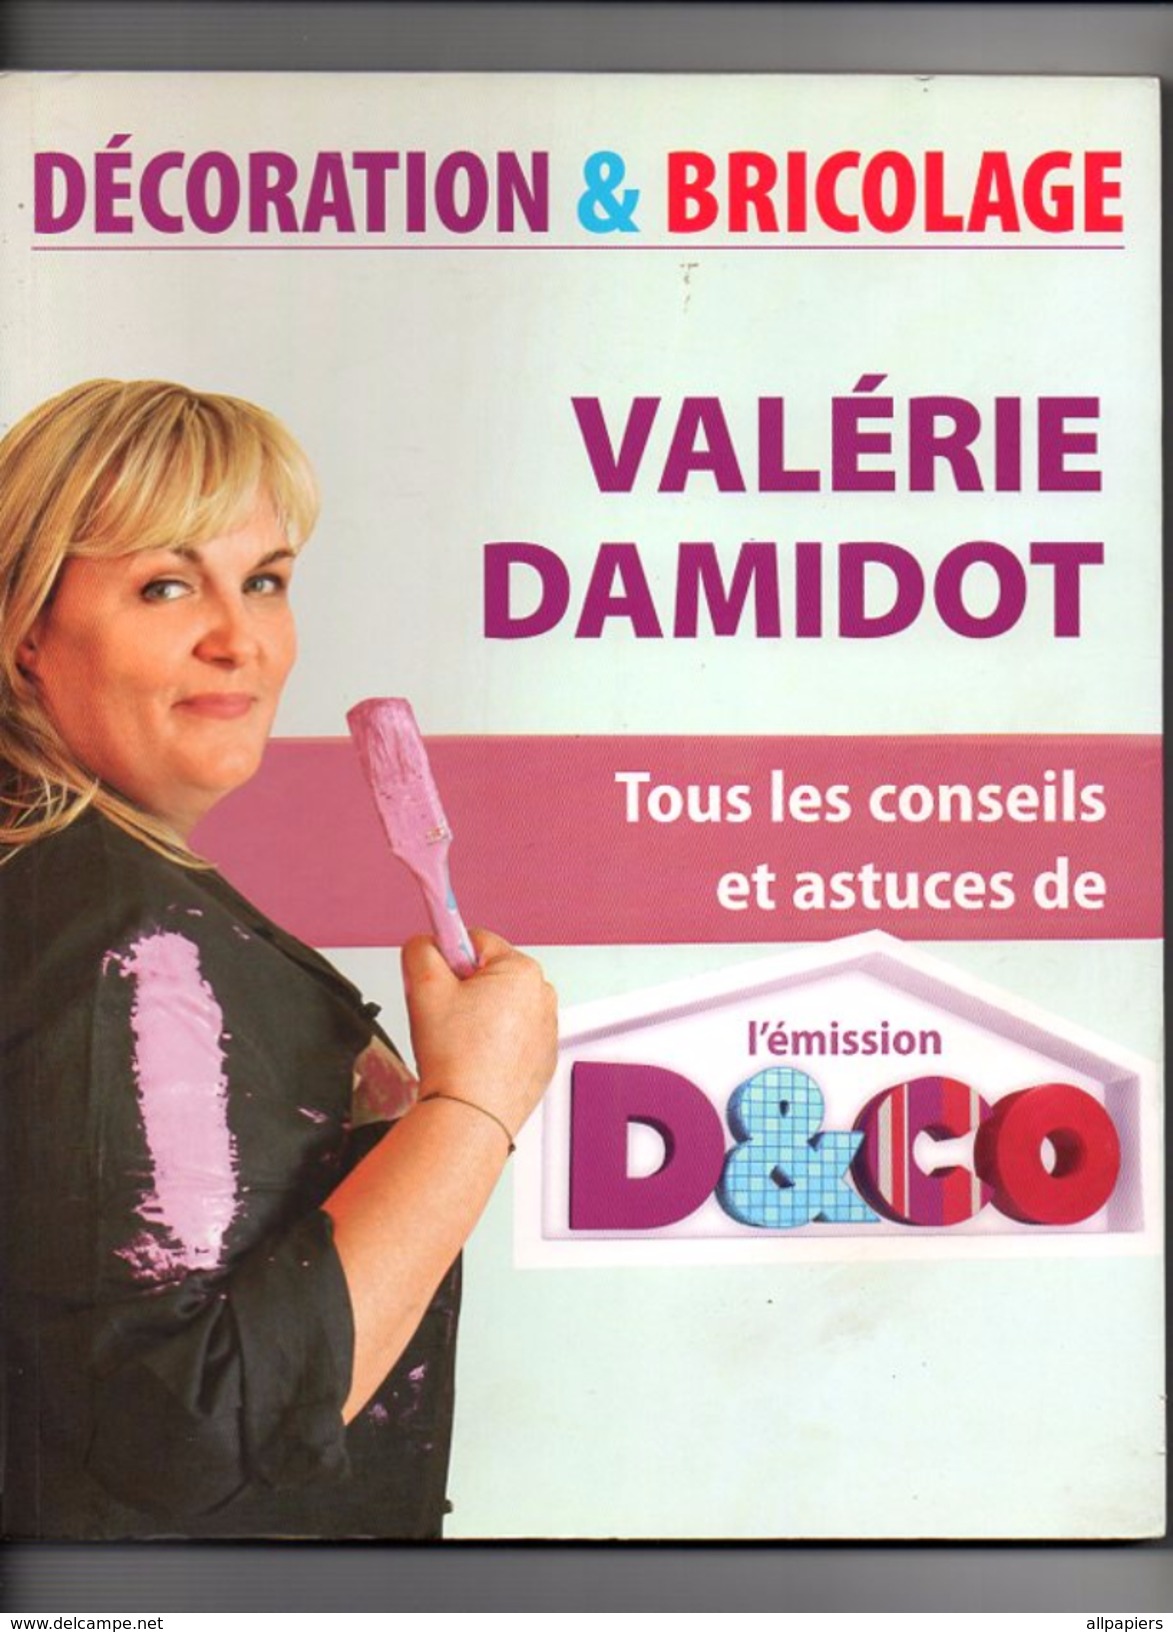 Décoration & Bricolage Valérie Damidot Tous Les Conseils Et Astuces De L'émission D&CO De 2008 - Home Decoration